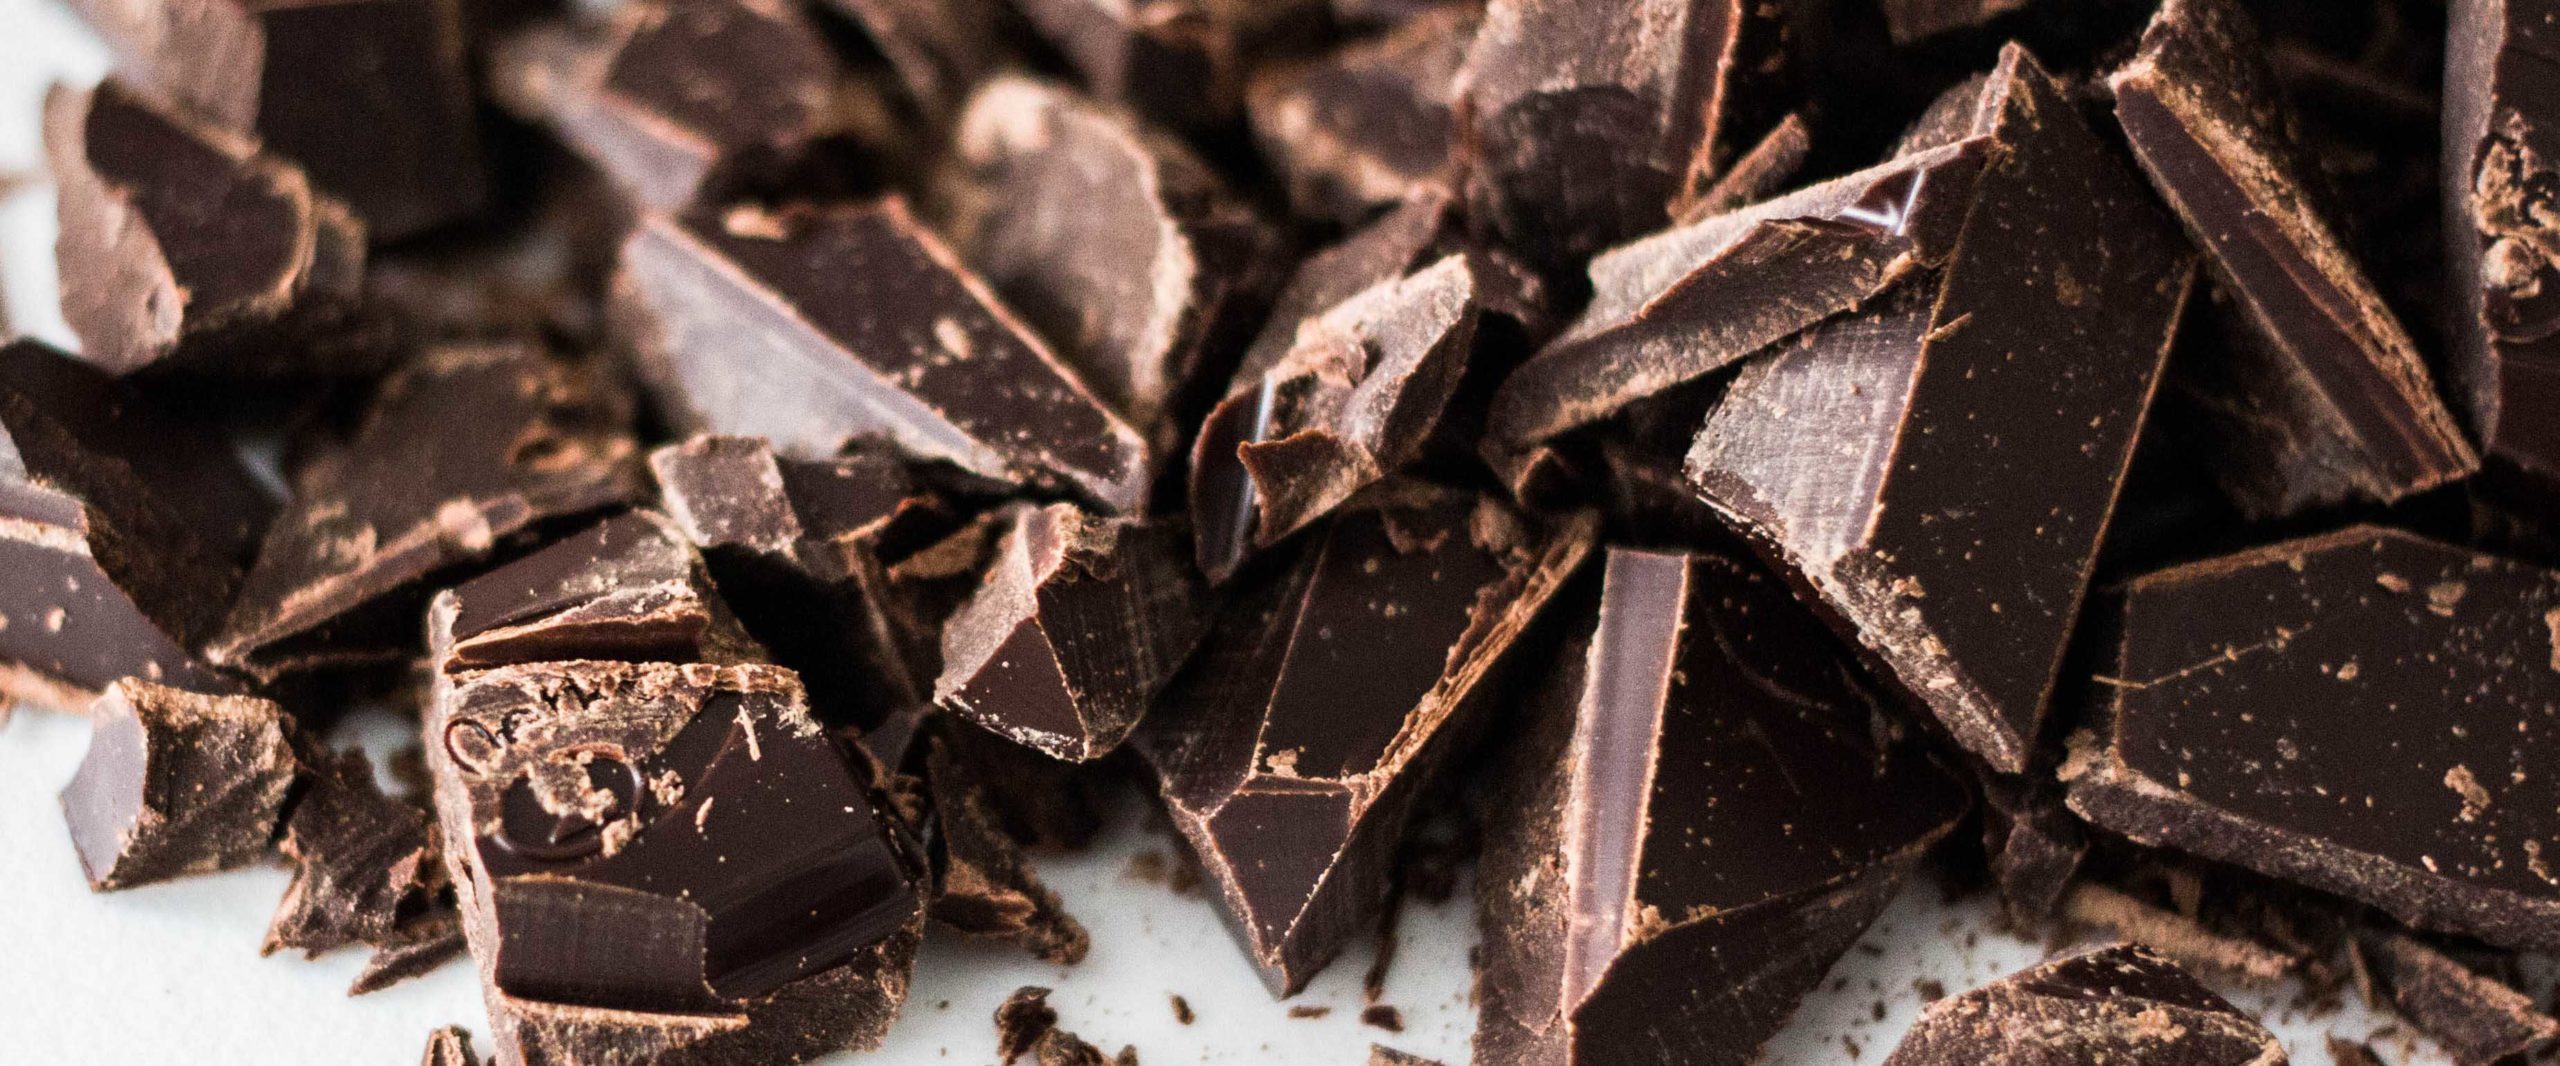 Artesanos del chocolate, surtido de chocolate, dulces de chocolate y novedades en chocolate.